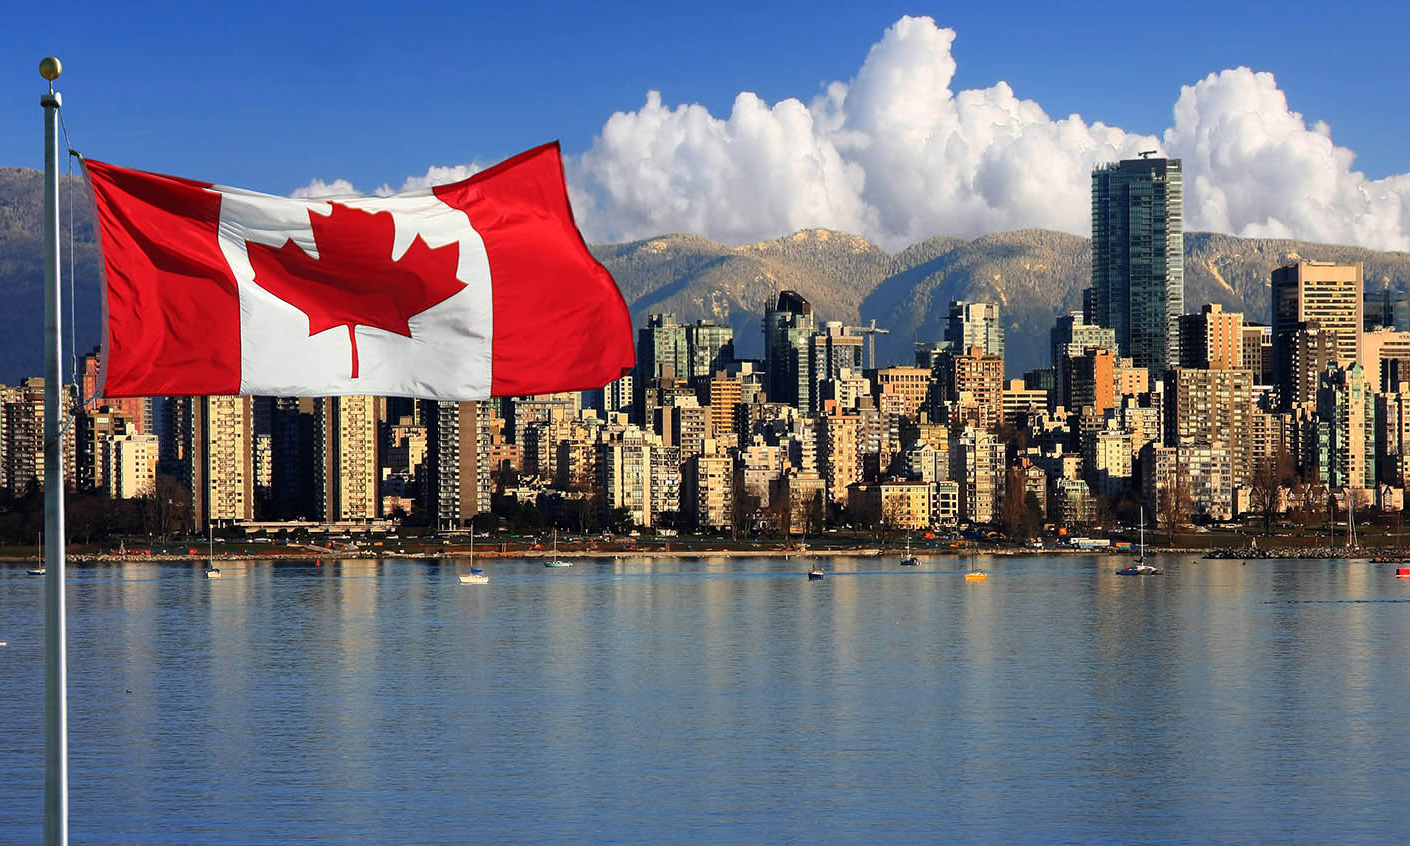 Định cư Canada diện doanh nhân cần những điều gì ?